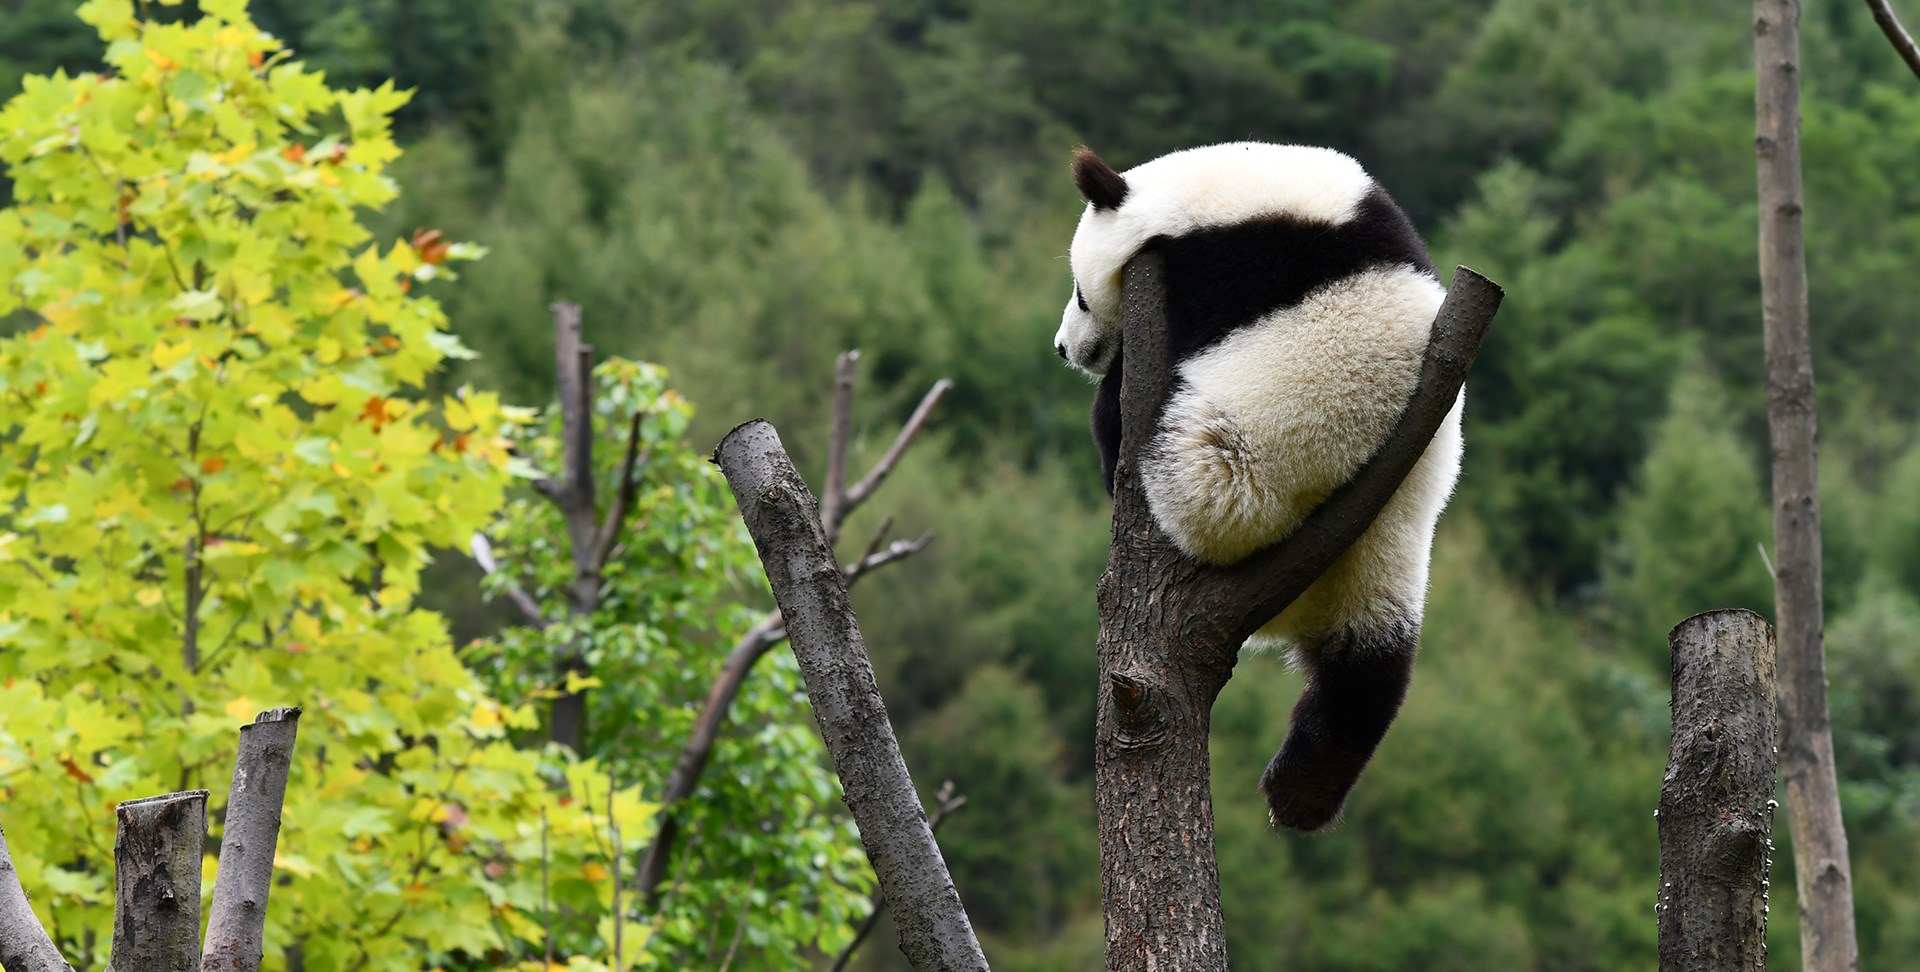 Explore Jiuzhaigou, Huanglong and Panda in Wolong